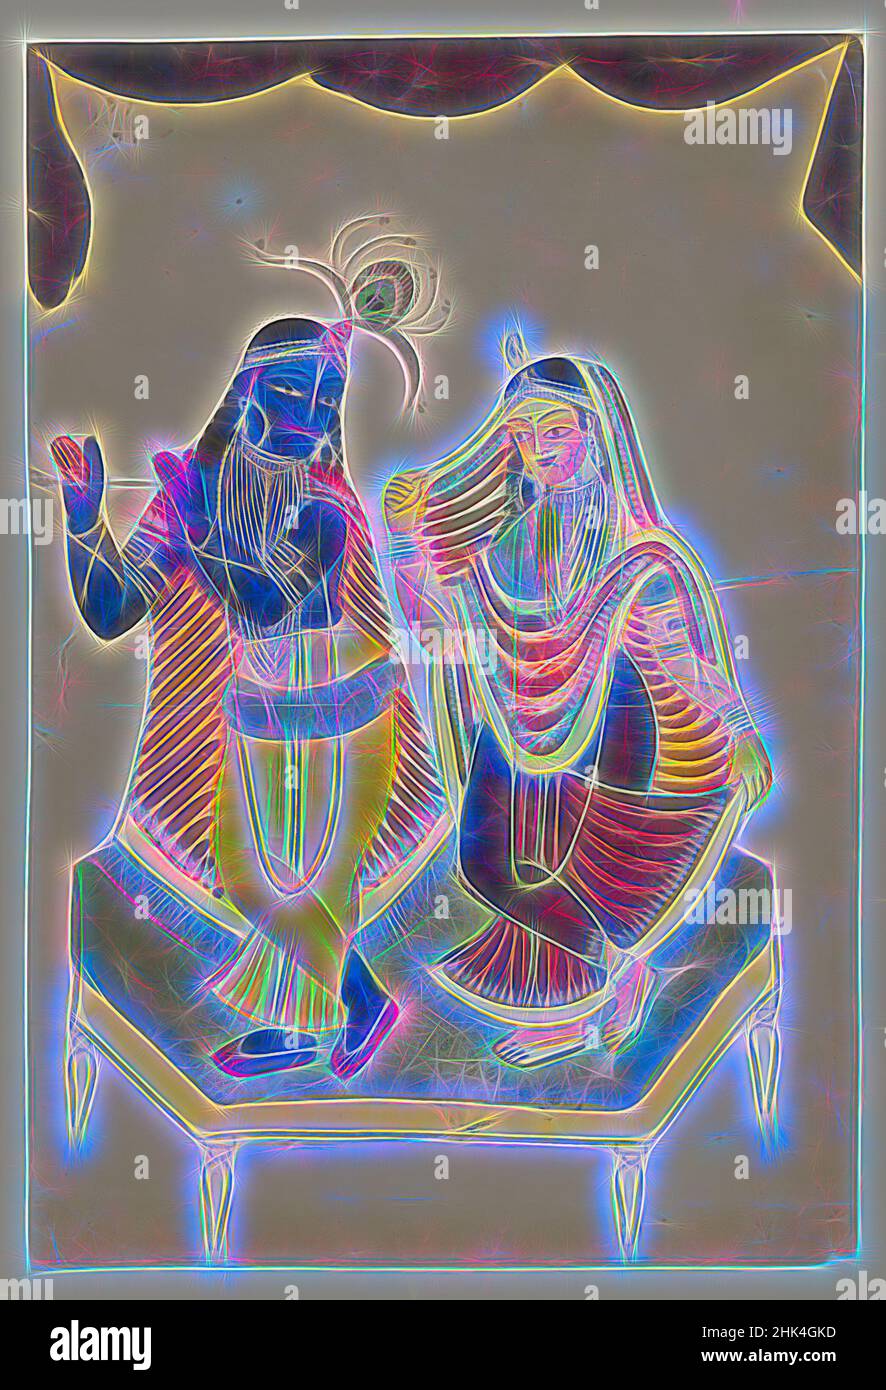 Ispirati a Krishna e Radha, Watercolors su carta con dettagli in stagno lucido, Calcutta, Bengala Occidentale, India, fine 19th-inizio 20th secolo, 16 x 10 1/2 in., 40,6 x 26,7 cm, ndd11, ndd3, Reimagined by Artotop. L'arte classica reinventata con un tocco moderno. Design di calda e allegra luminosità e di raggi di luce. La fotografia si ispira al surrealismo e al futurismo, abbracciando l'energia dinamica della tecnologia moderna, del movimento, della velocità e rivoluzionando la cultura Foto Stock